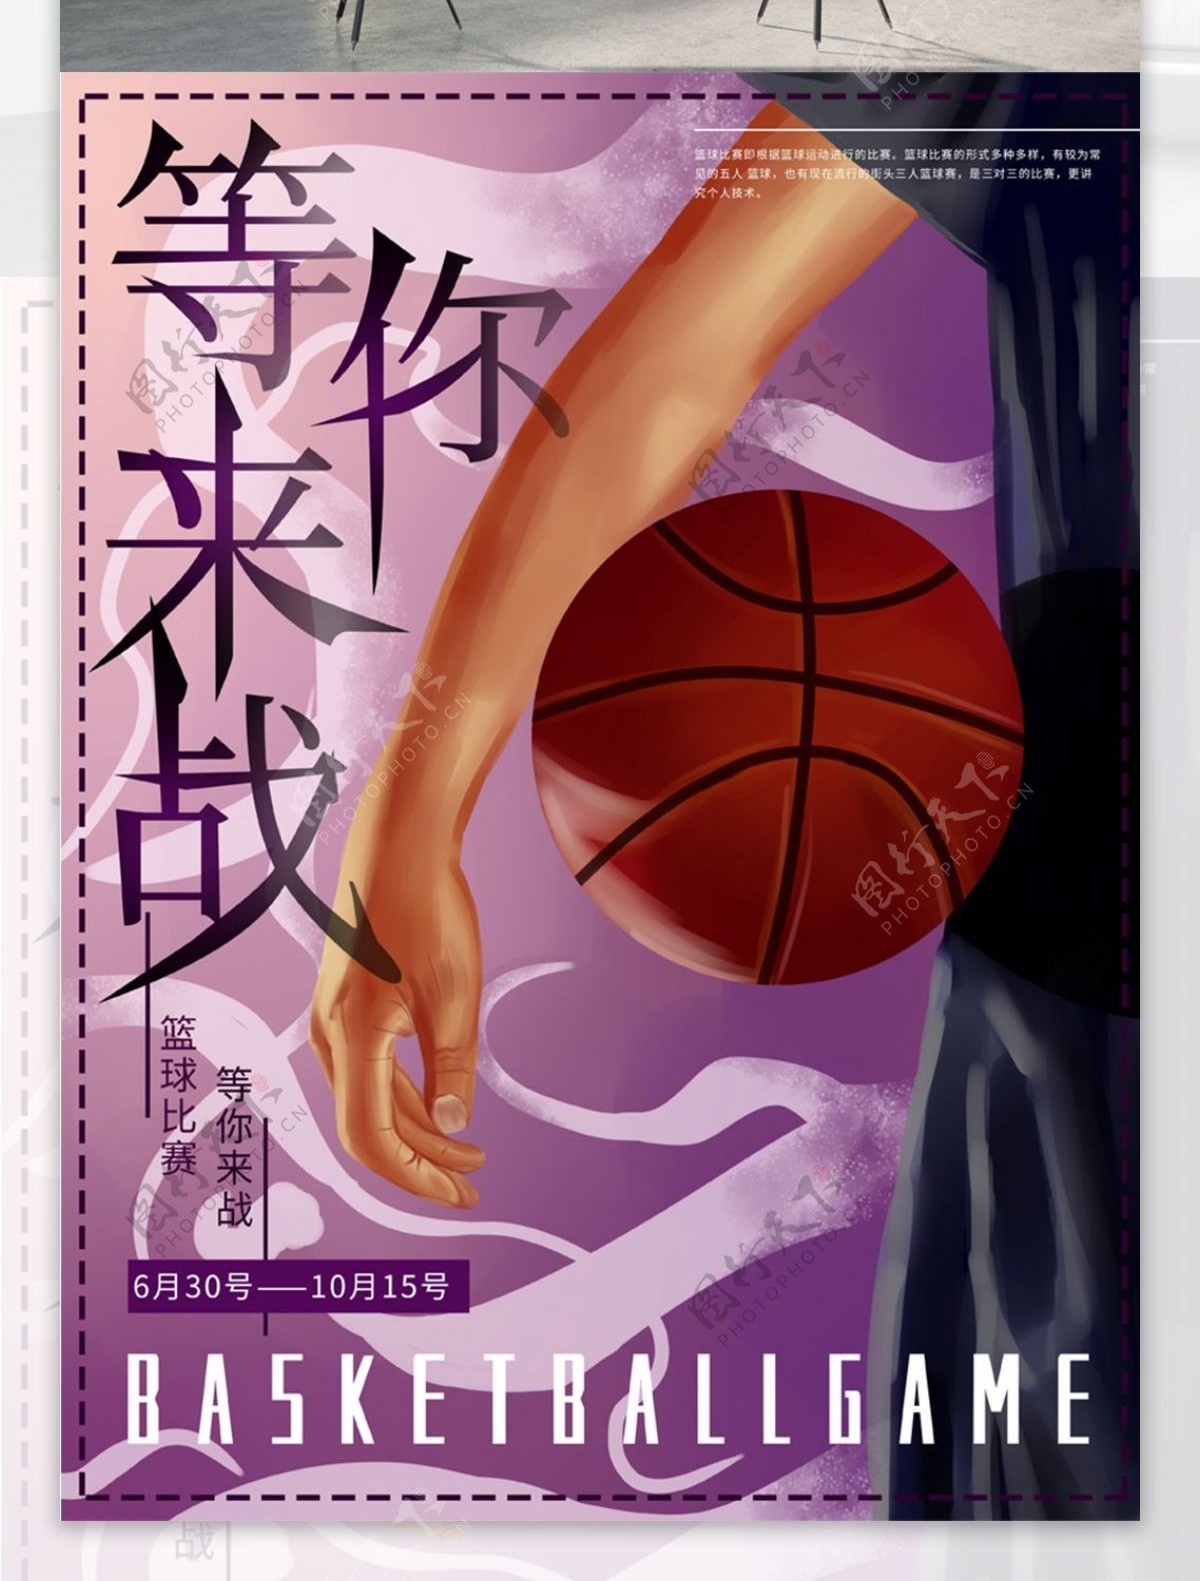 原创手绘篮球比赛运动体育海报